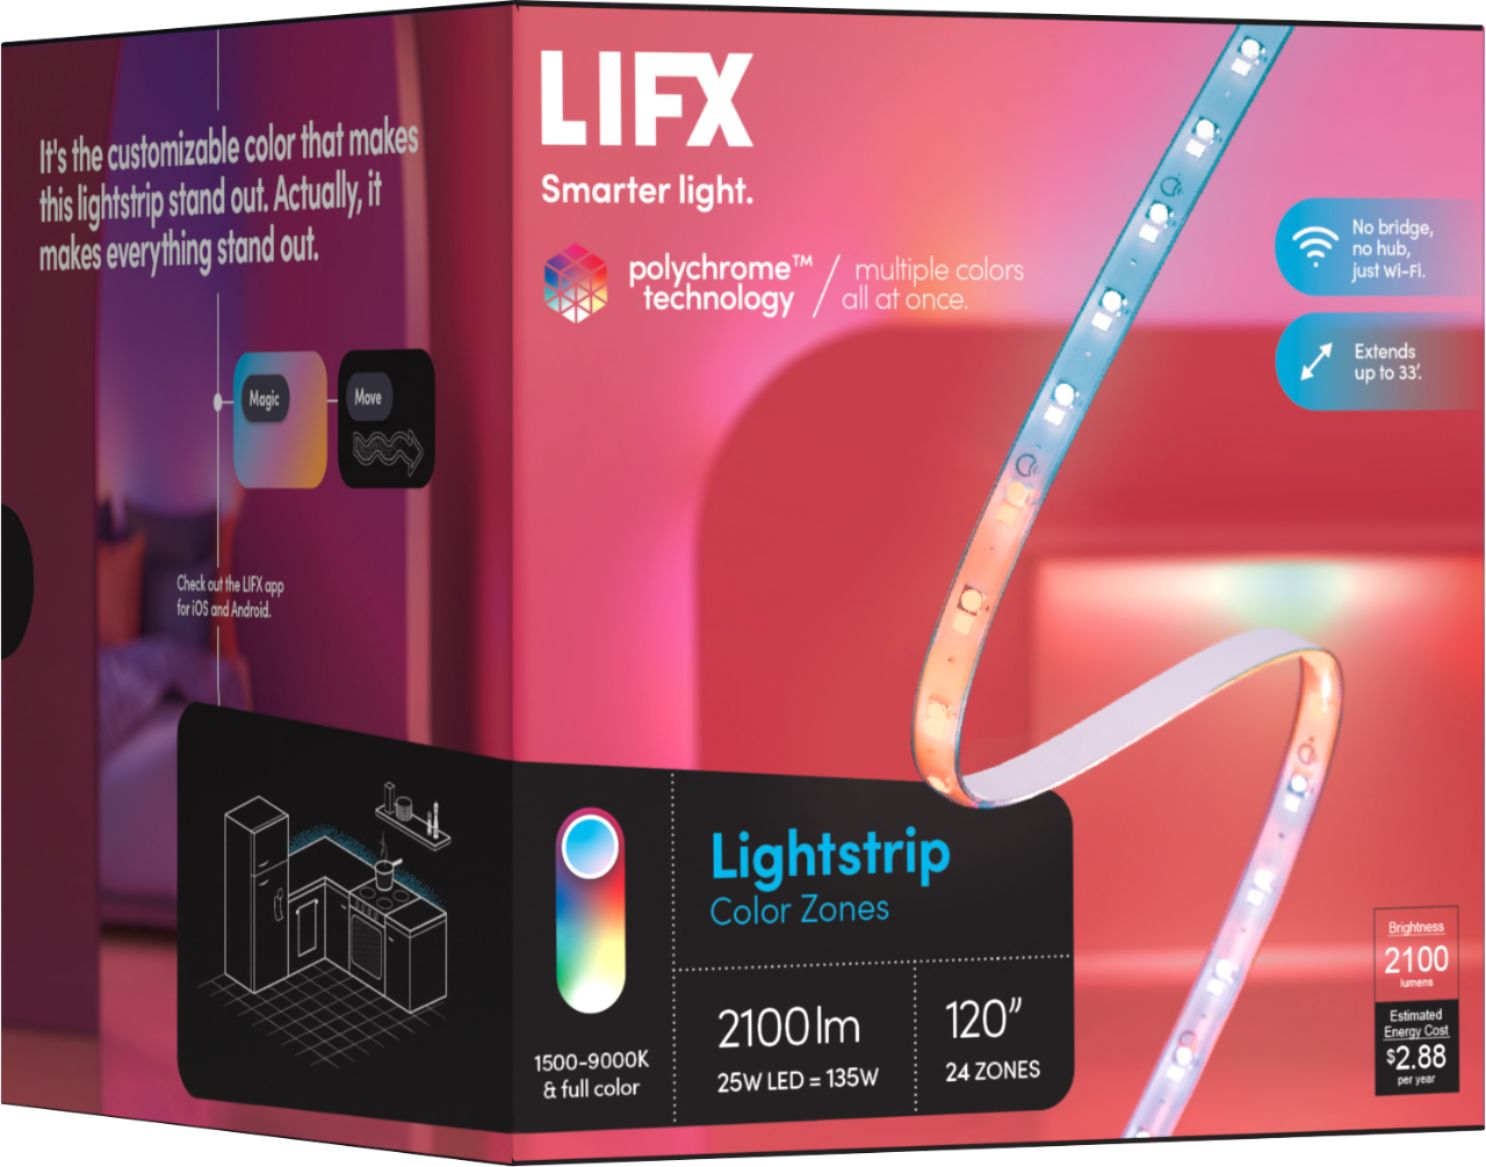 LIFX Lightstrip Color Zones 120" - Best Buy